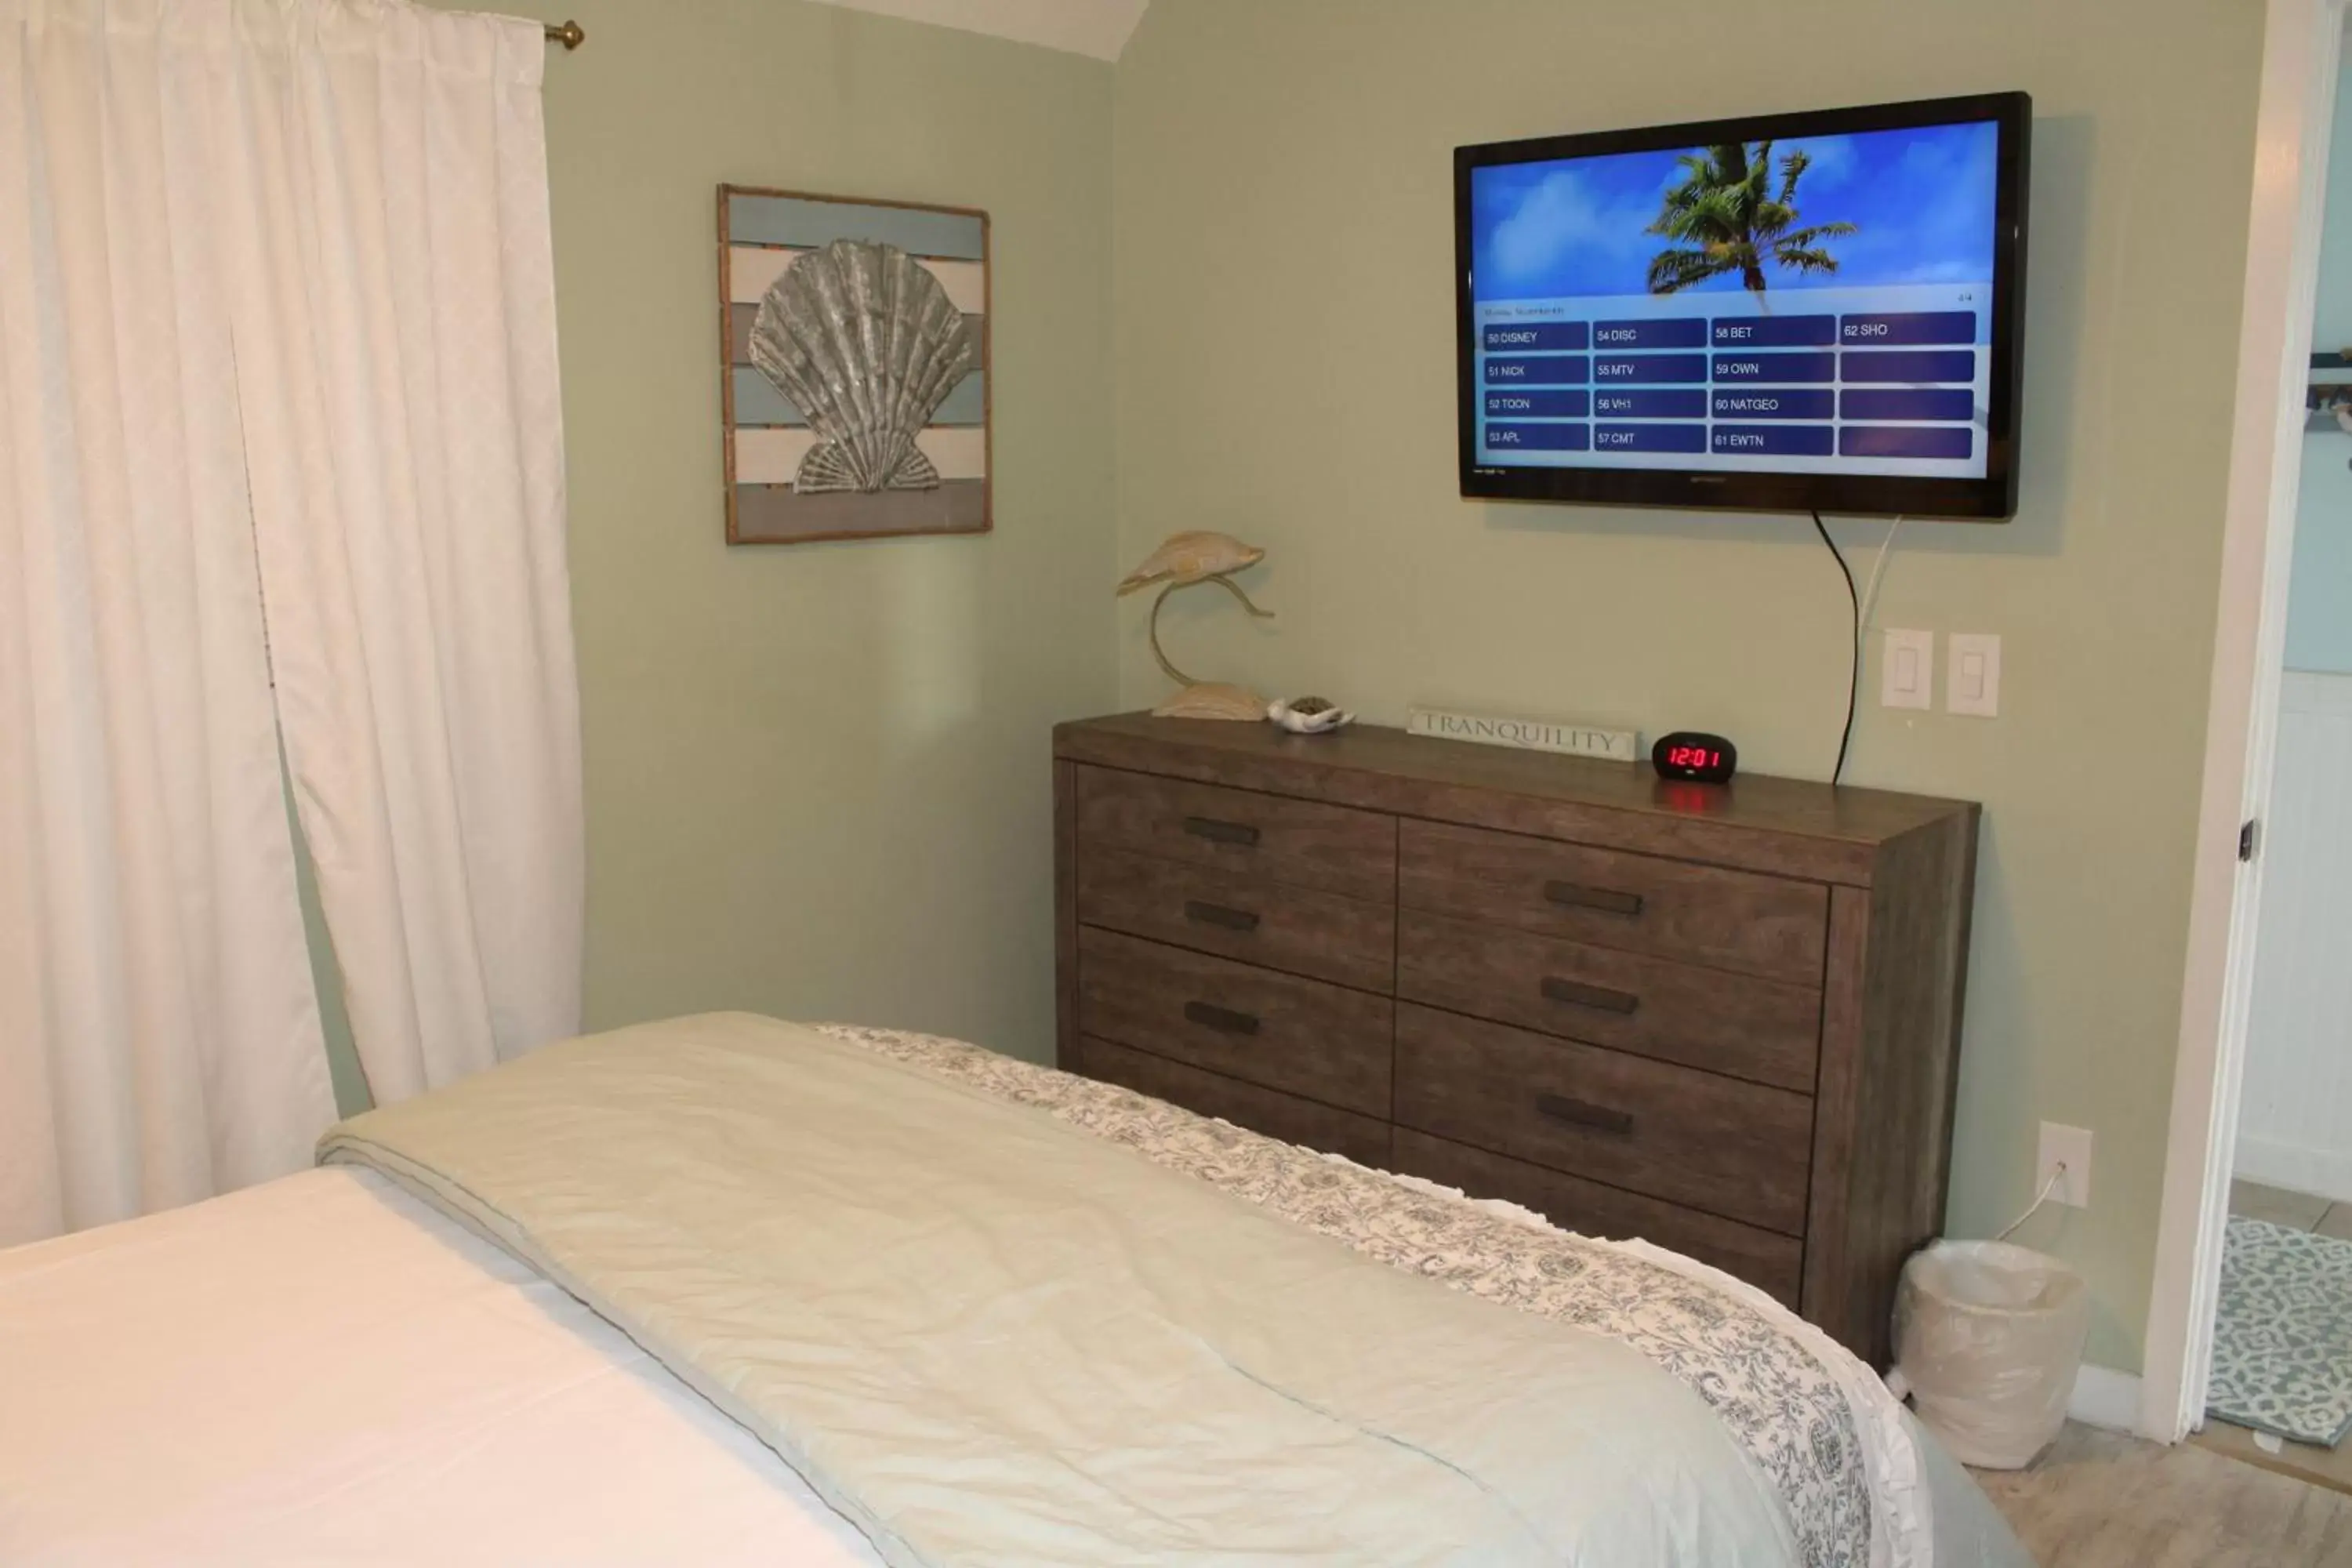 Bedroom, TV/Entertainment Center in Myrtle Beach Resort